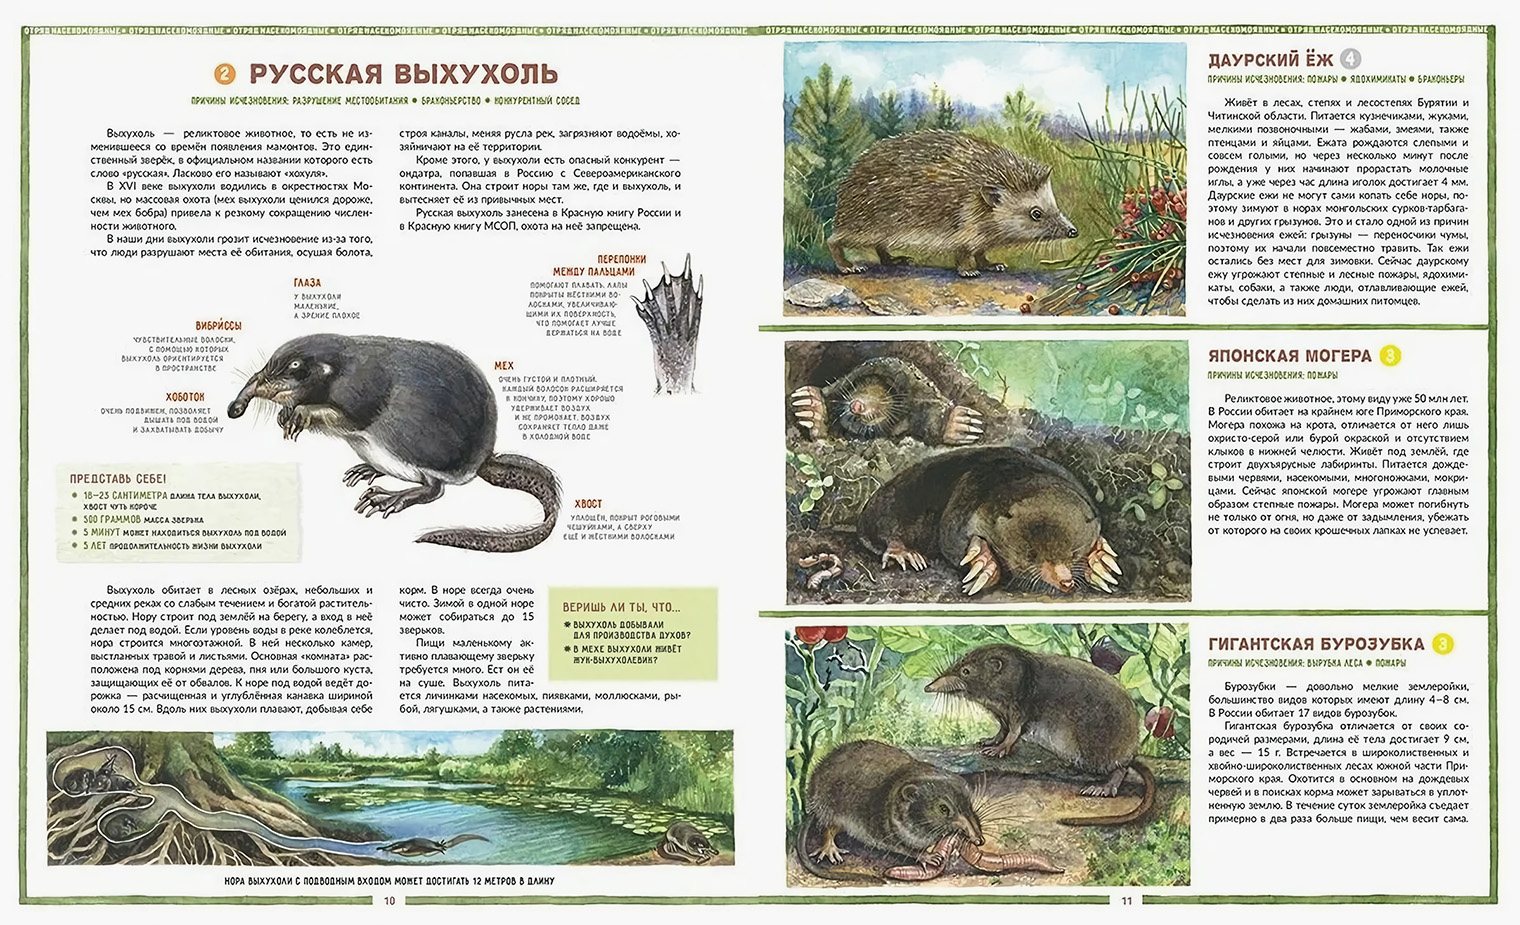 Натуралистичные иллюстрации дают точное представление о том, как выглядит животное